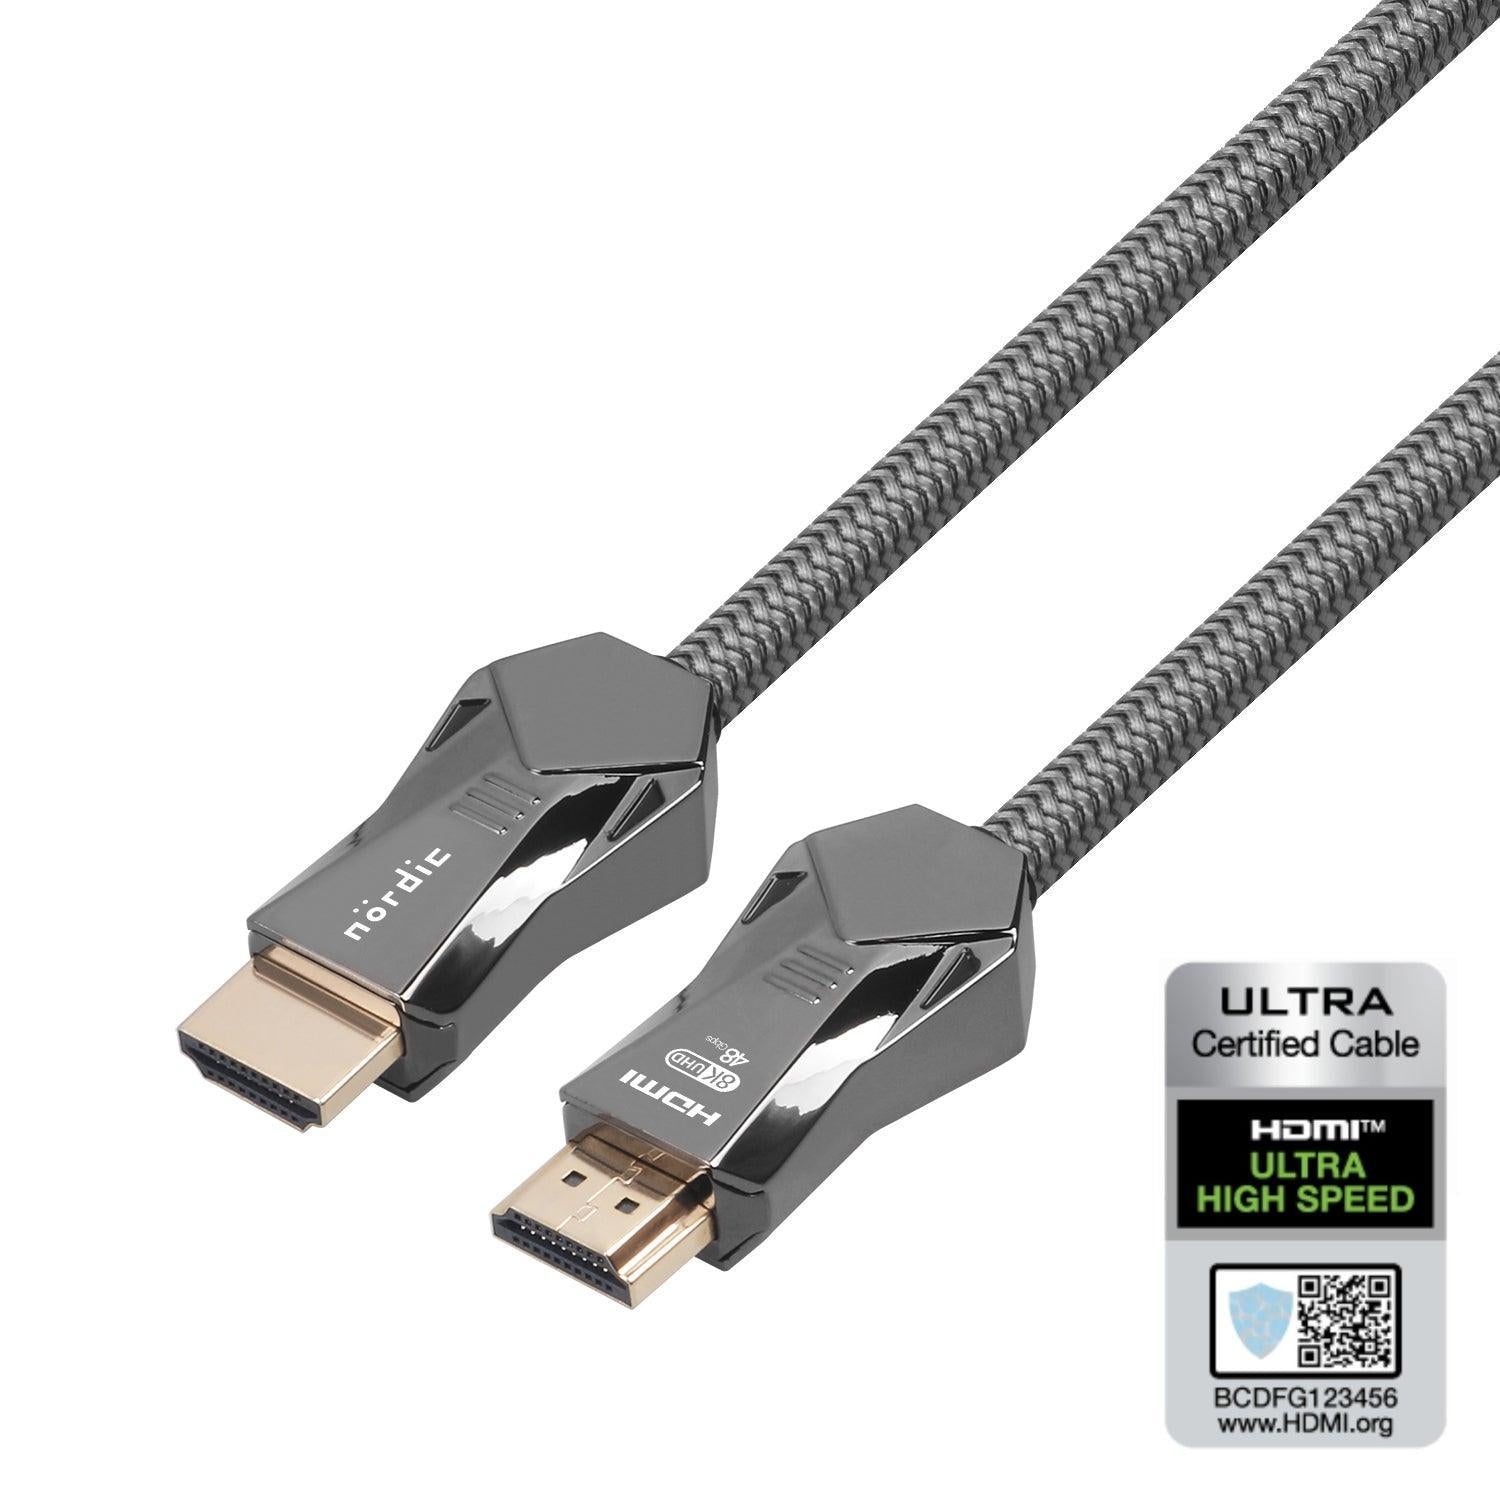 NORDIC CERTIFICEREDE KABLER 1m Ultra High Speed HDMI 2.1 8K 60Hz 4K 120Hz 48Gbps Dynamic HDR eARC VRR Nylon flettet kabel forgyldt